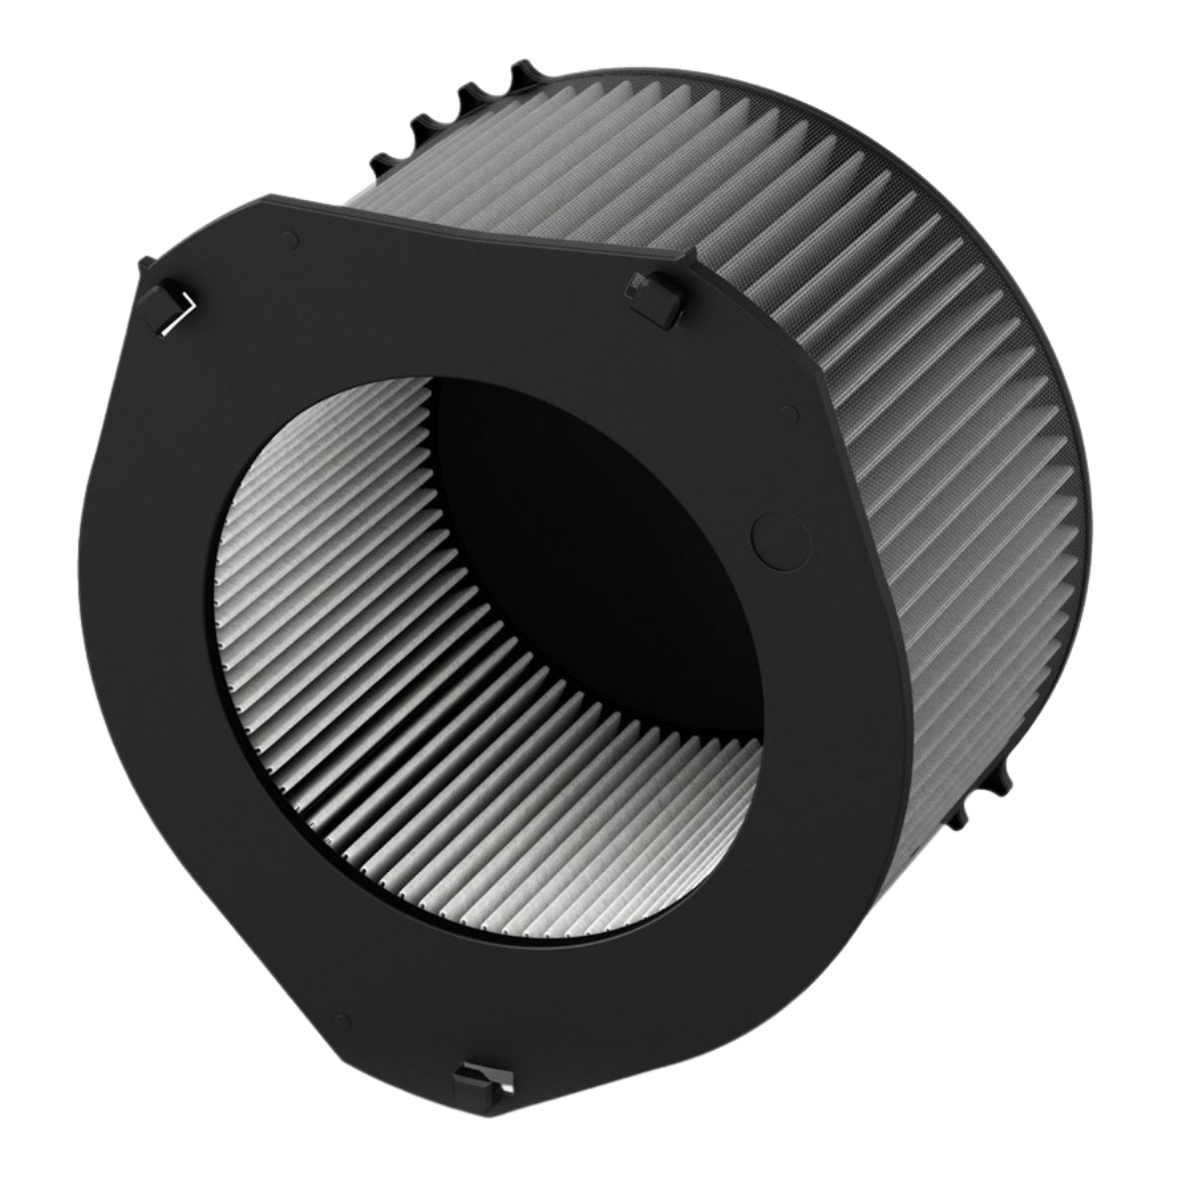 Filtr 360° do Ideal AP140 PRO, kompletny i oryginalny filtr Ideal. Narzędzie do walki ze smogiem, alergią i wirusami.